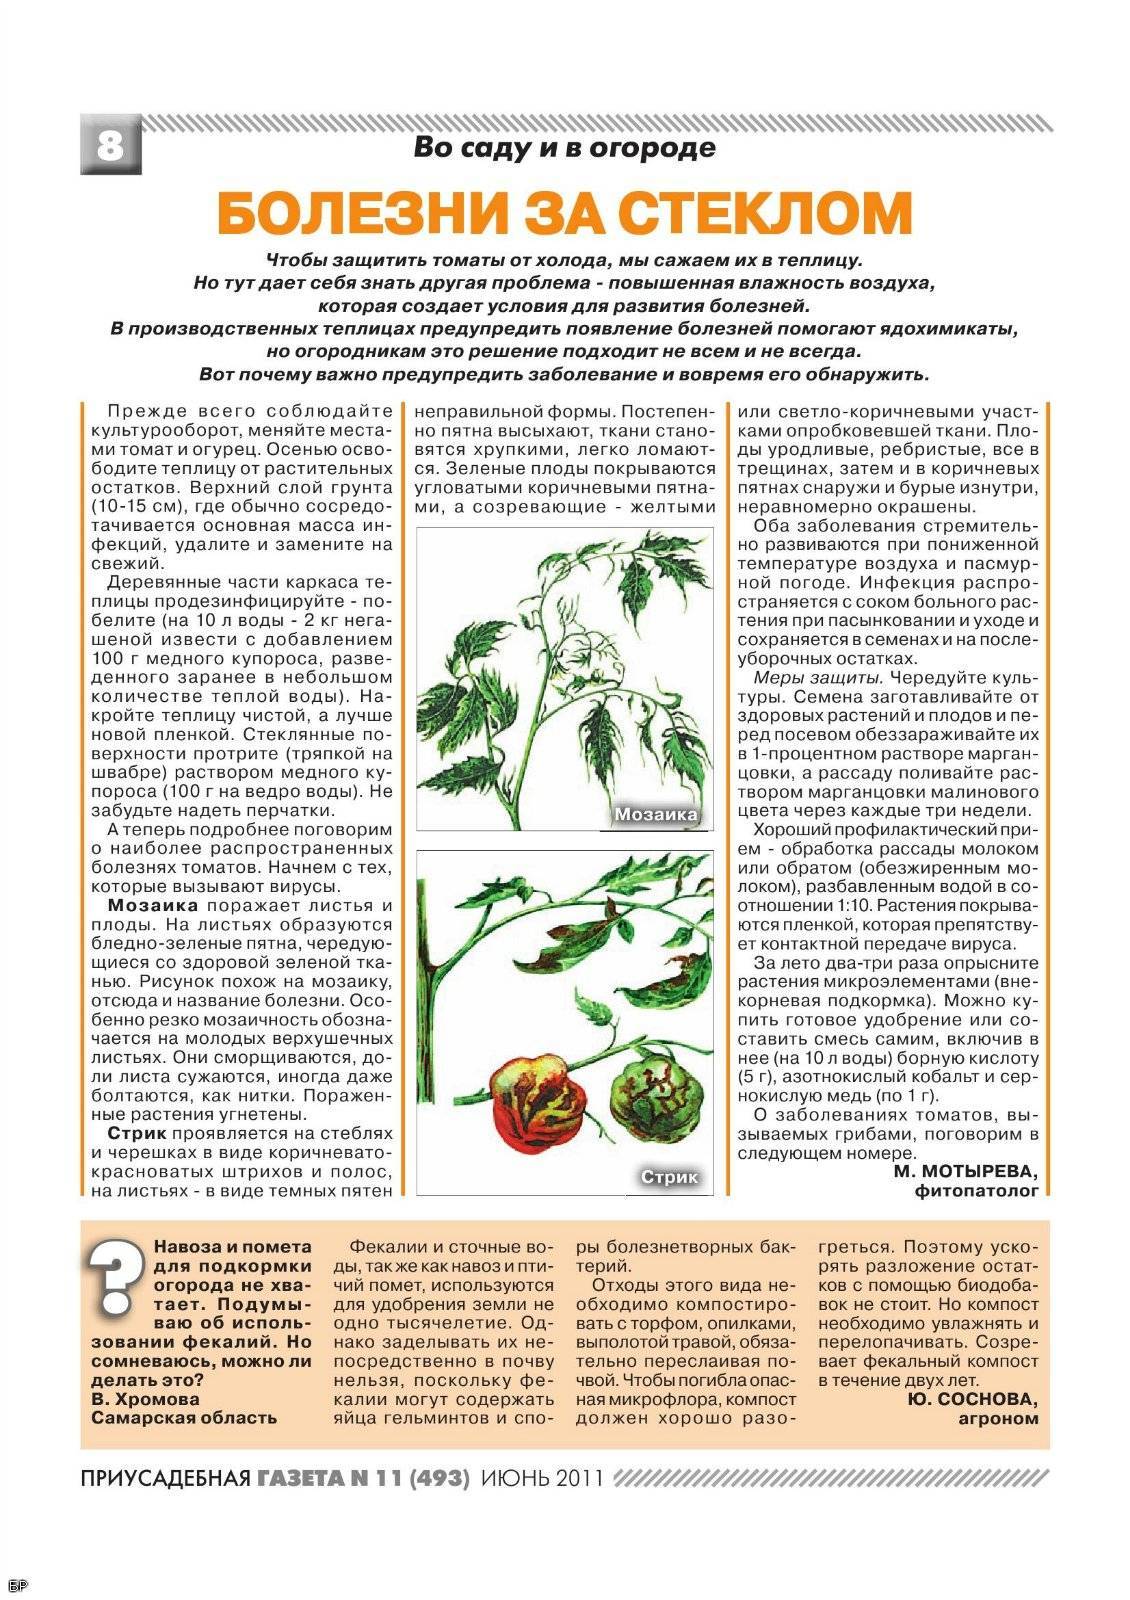 Болезни рассады томатов: возбудители и симптомы, фото и описание, лечение и профилактика